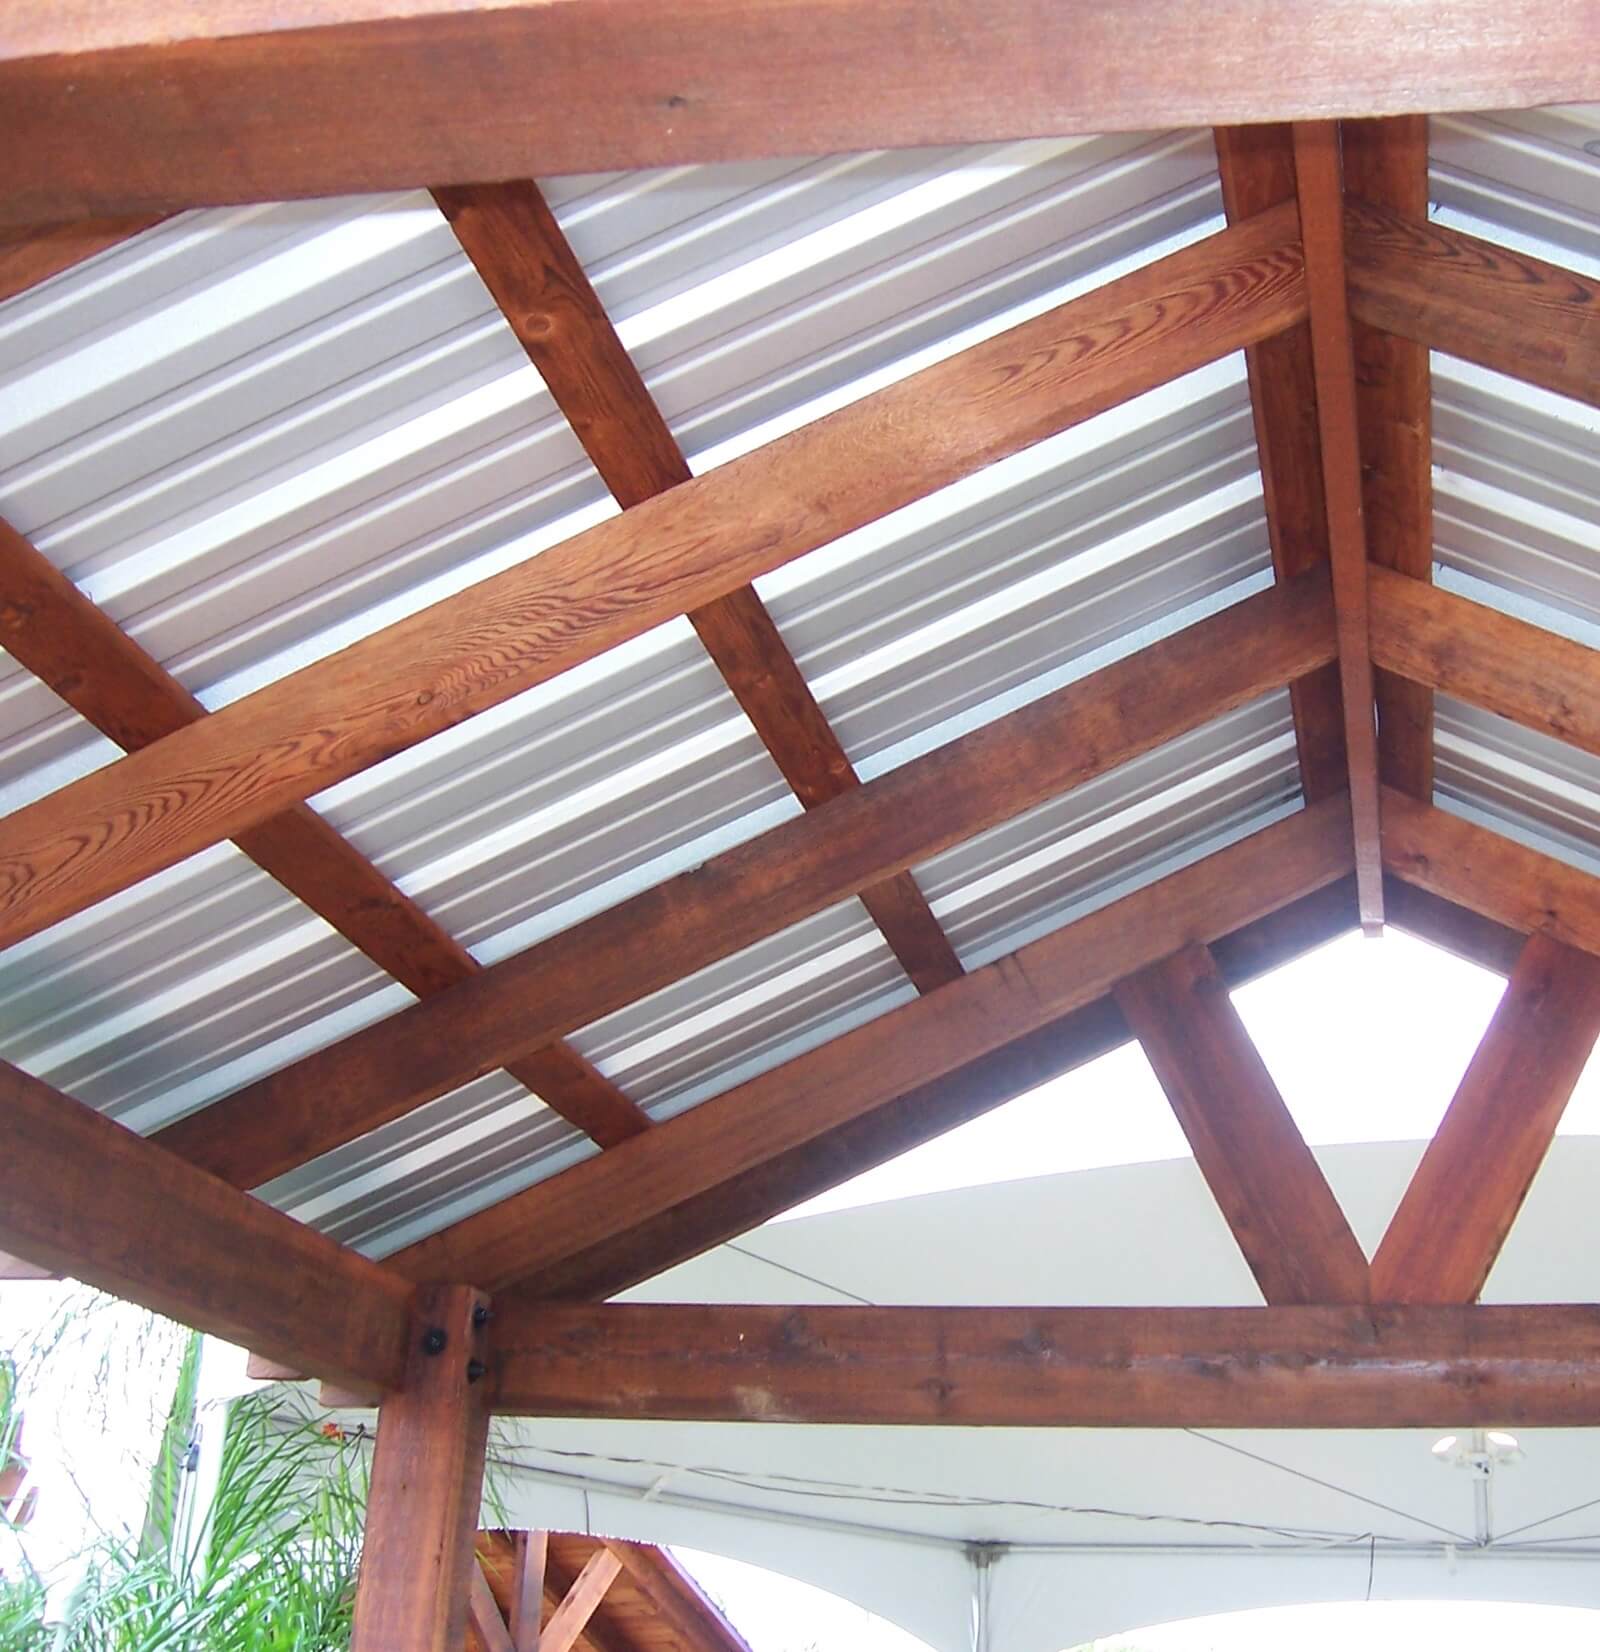 Big-Timber-Structures-Panama-Pavilion-9